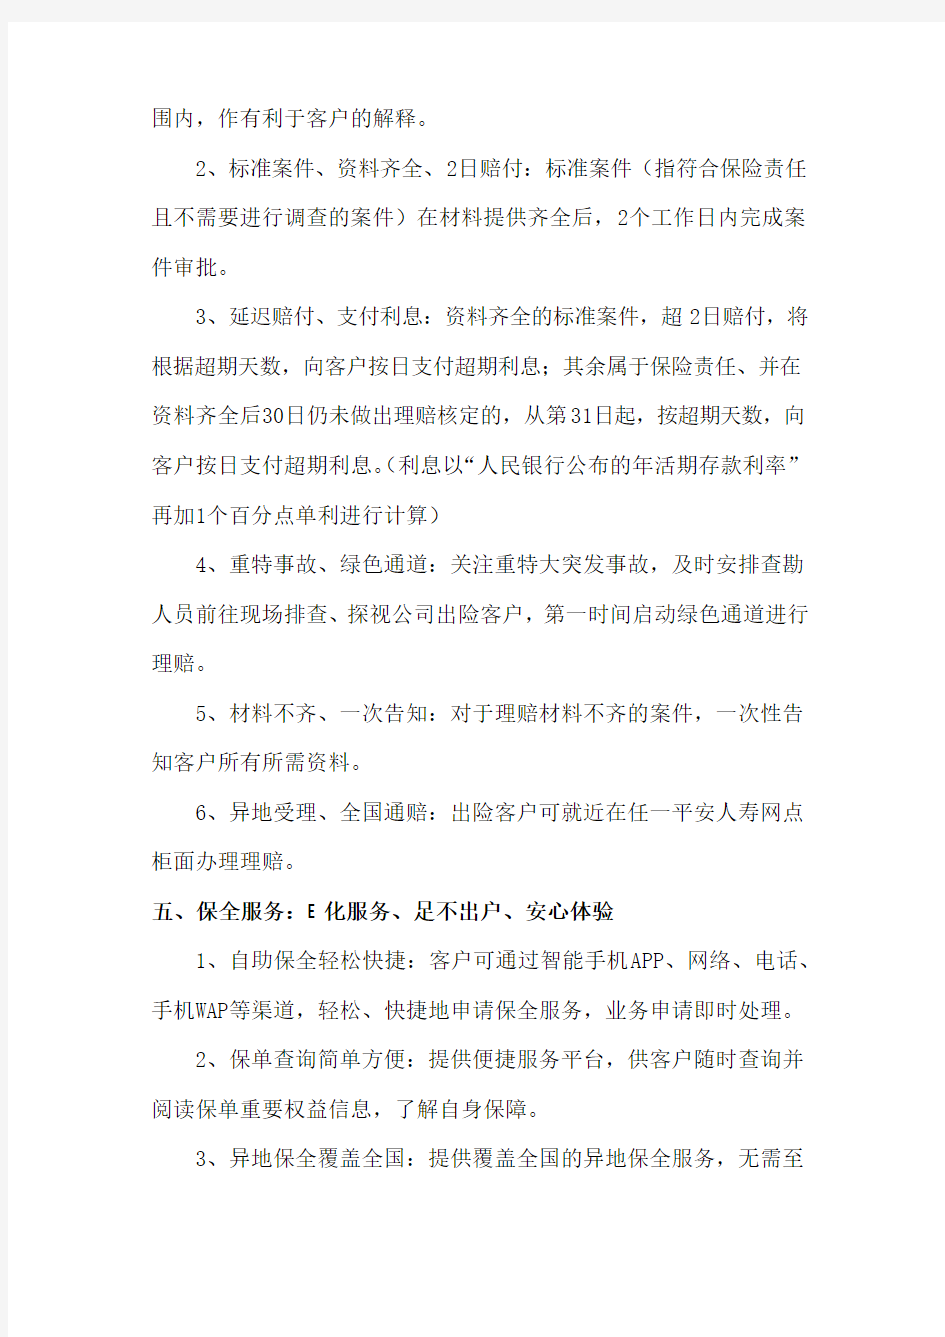 中国平安人寿保险股份有限公司保险服务承诺